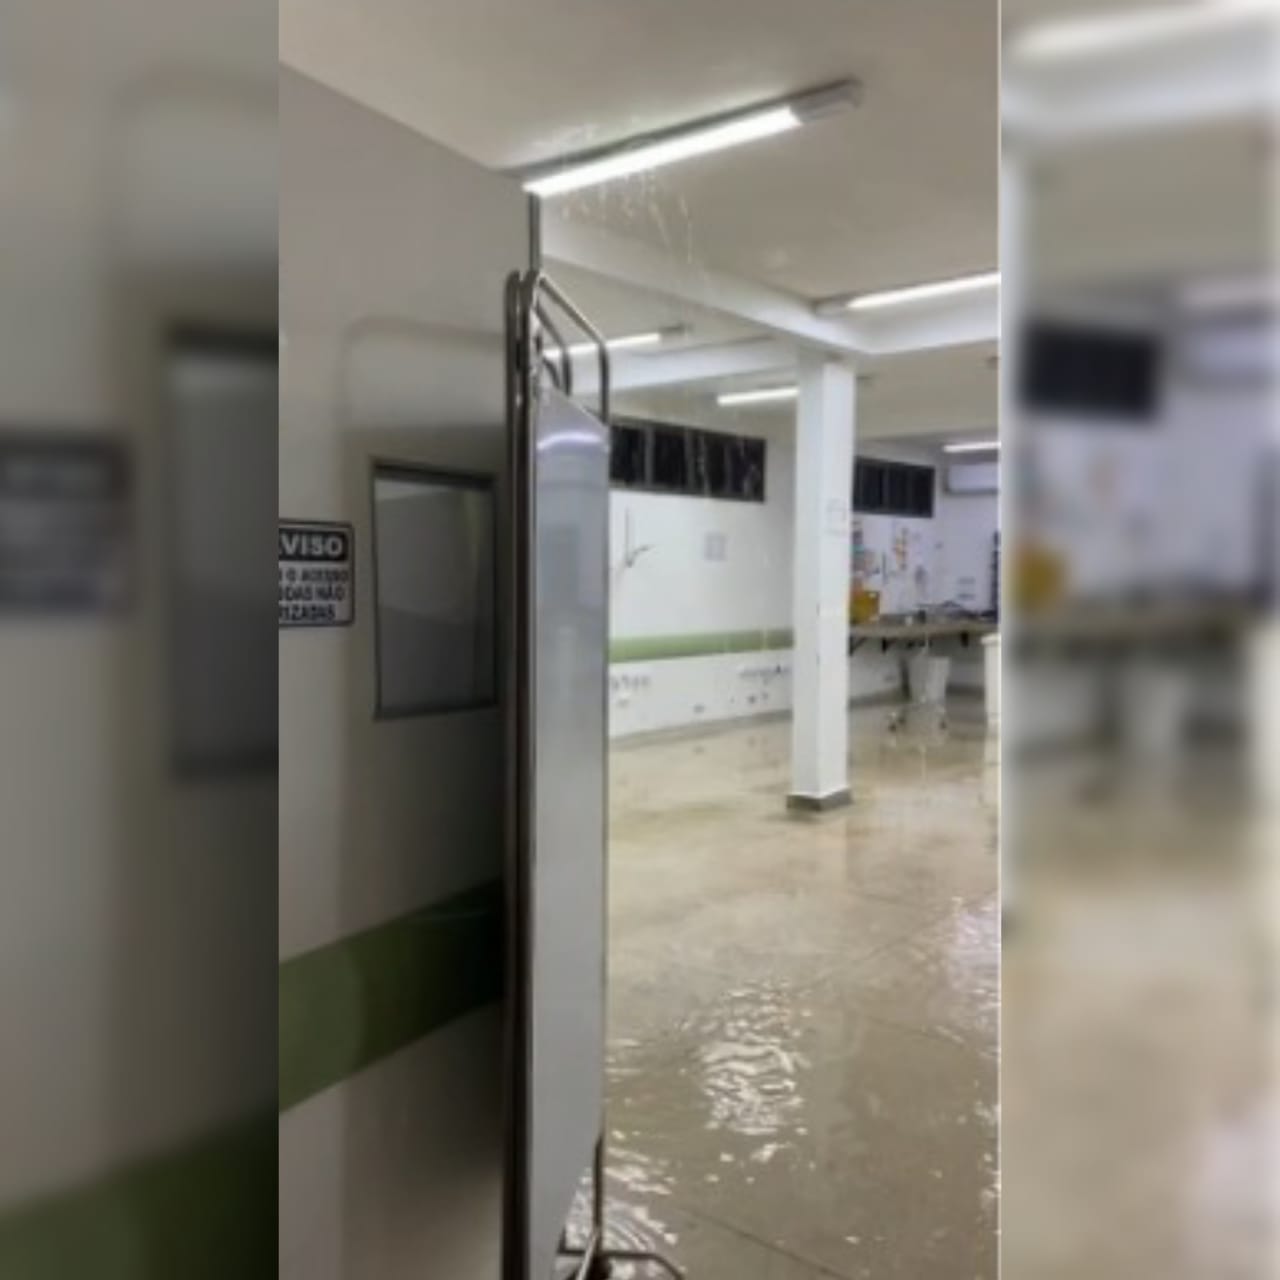 Um cano estourou e gerou vazamento de água em uma enfermaria da Unidade de Pronto Atendimento (UPA) Buriti Sereno, em Aparecida de Goiânia. (Foto: reprodução)